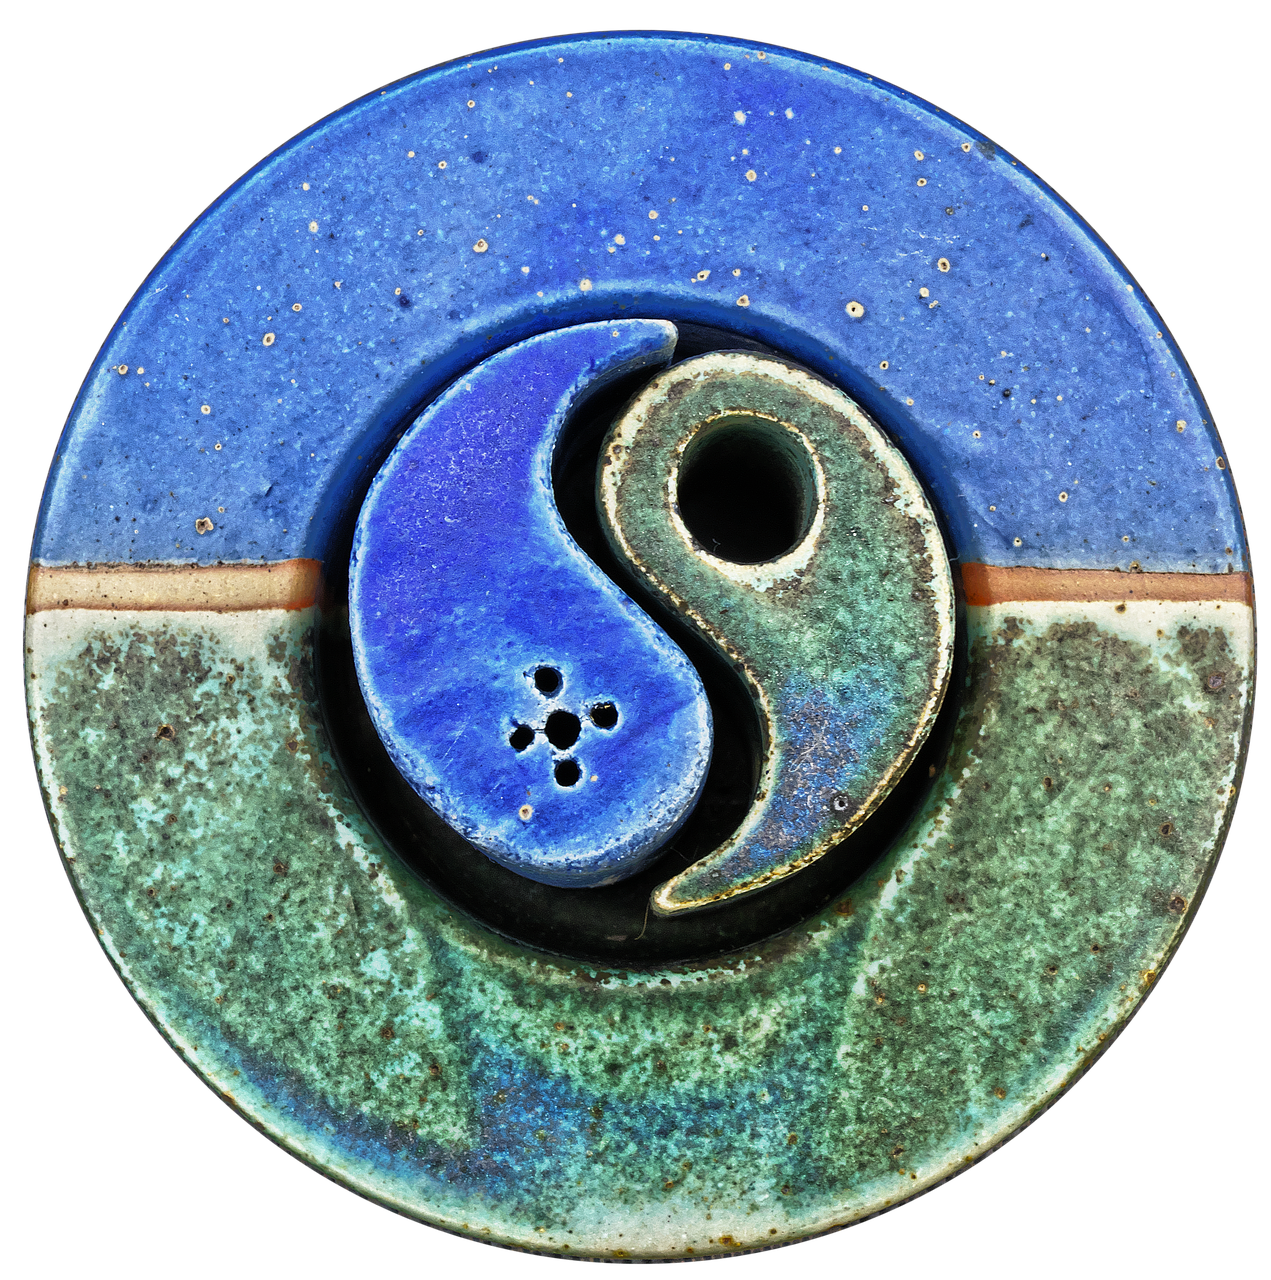 yin yang ceramic decoration free photo